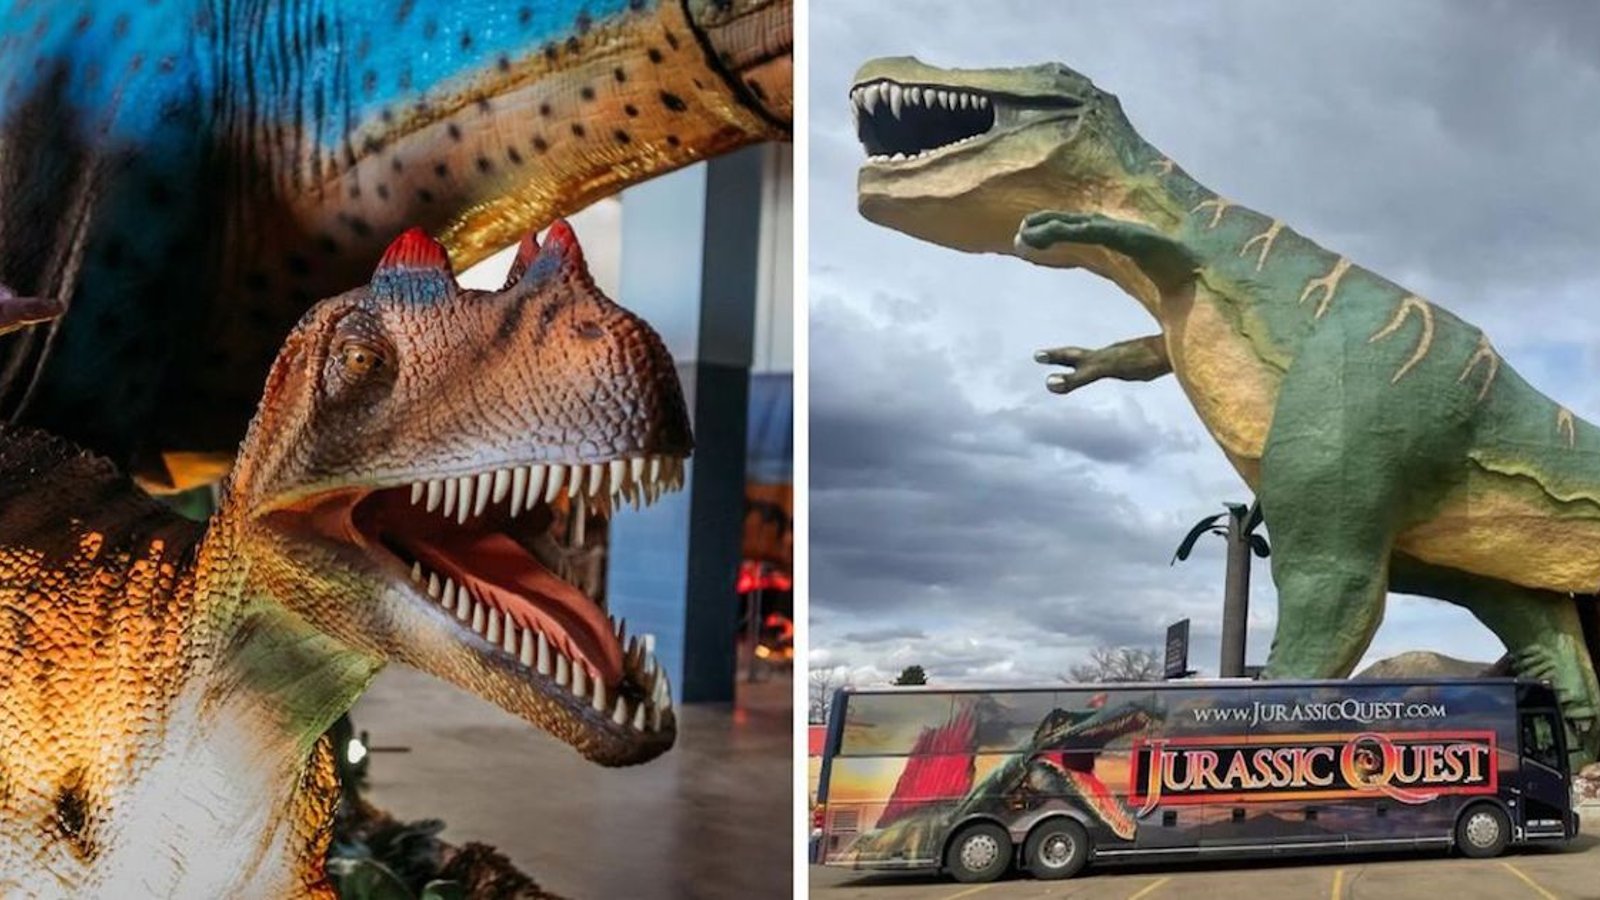 Les dinosaures débarqueront au Québec cette année